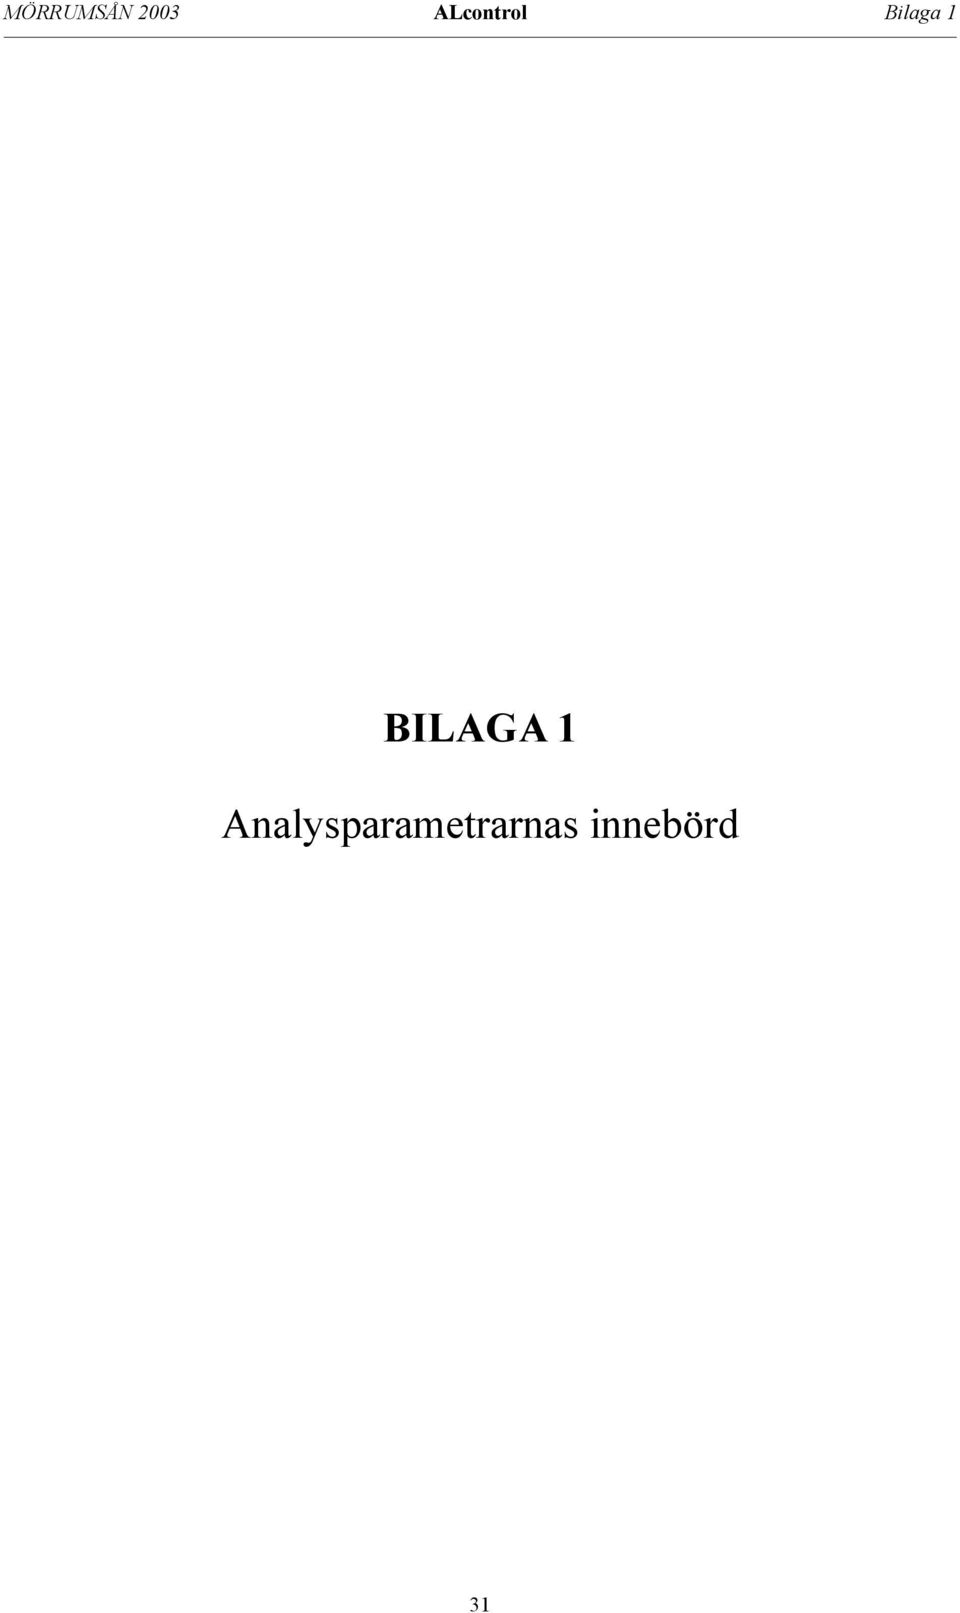 BILAGA 1